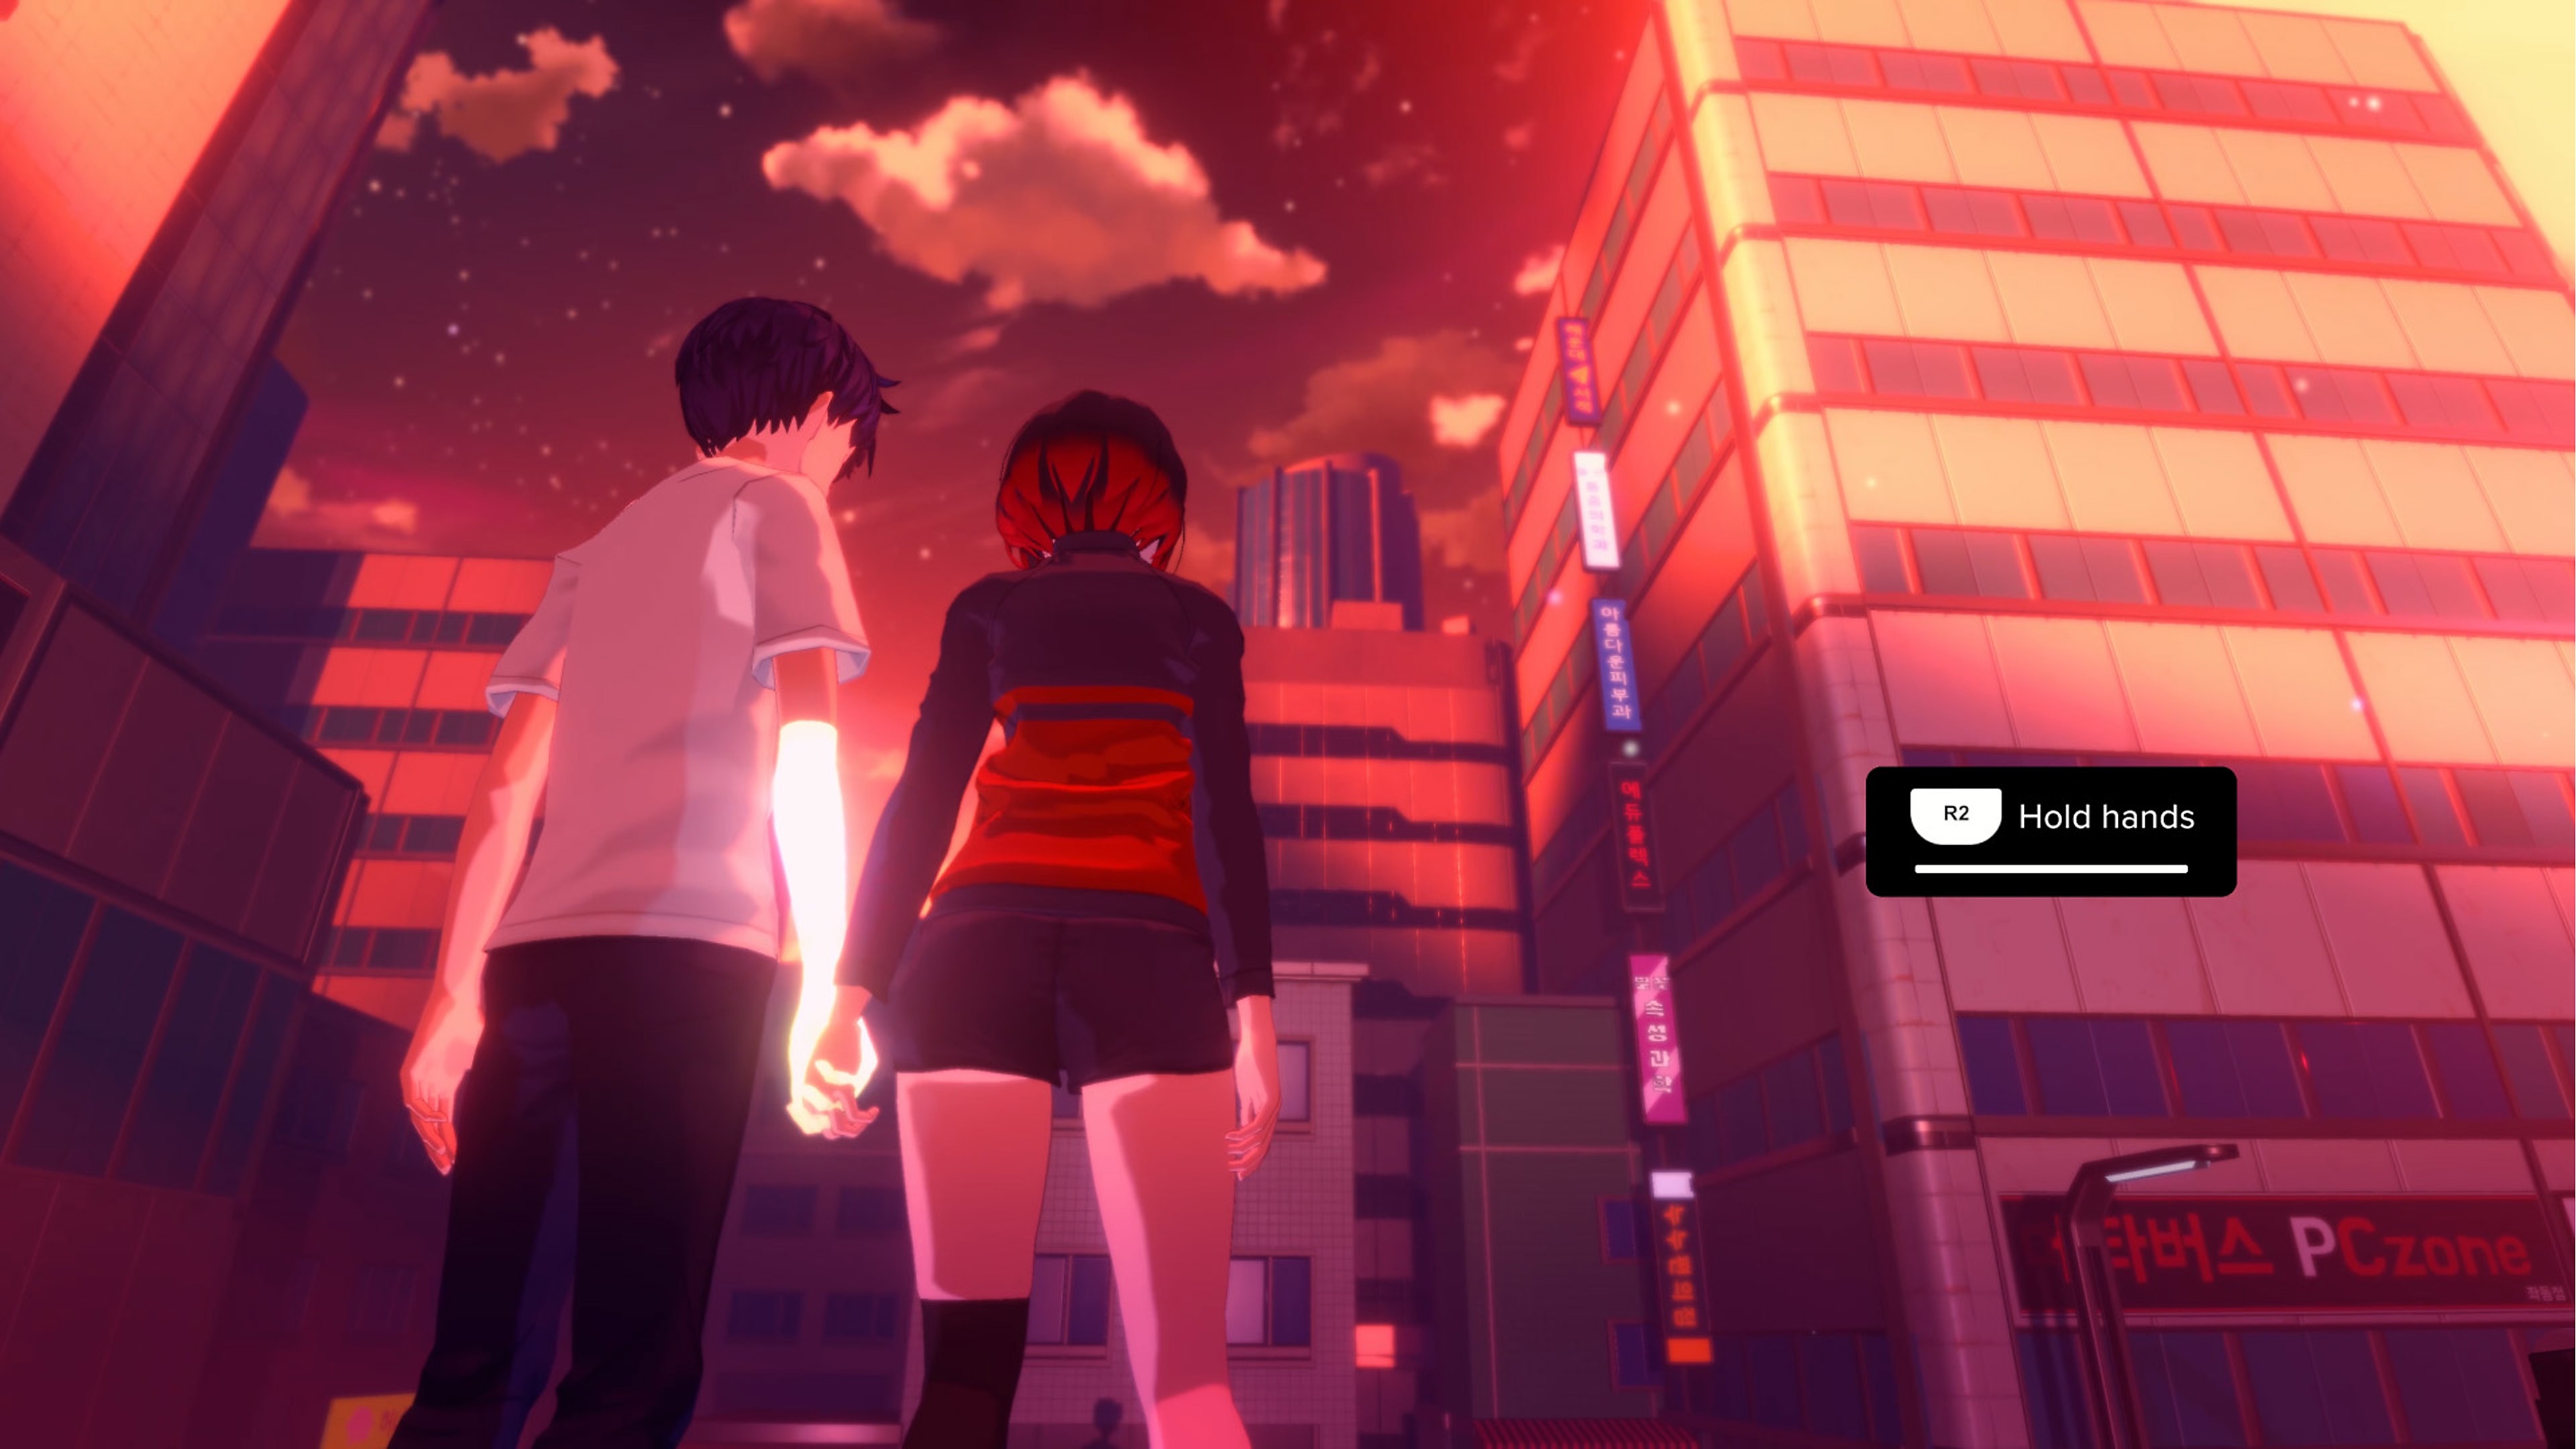 Eternights 2名の高校生の年頃のキャラクターが、高層ビルの光景の前で手をつないでいるスクリーンショット